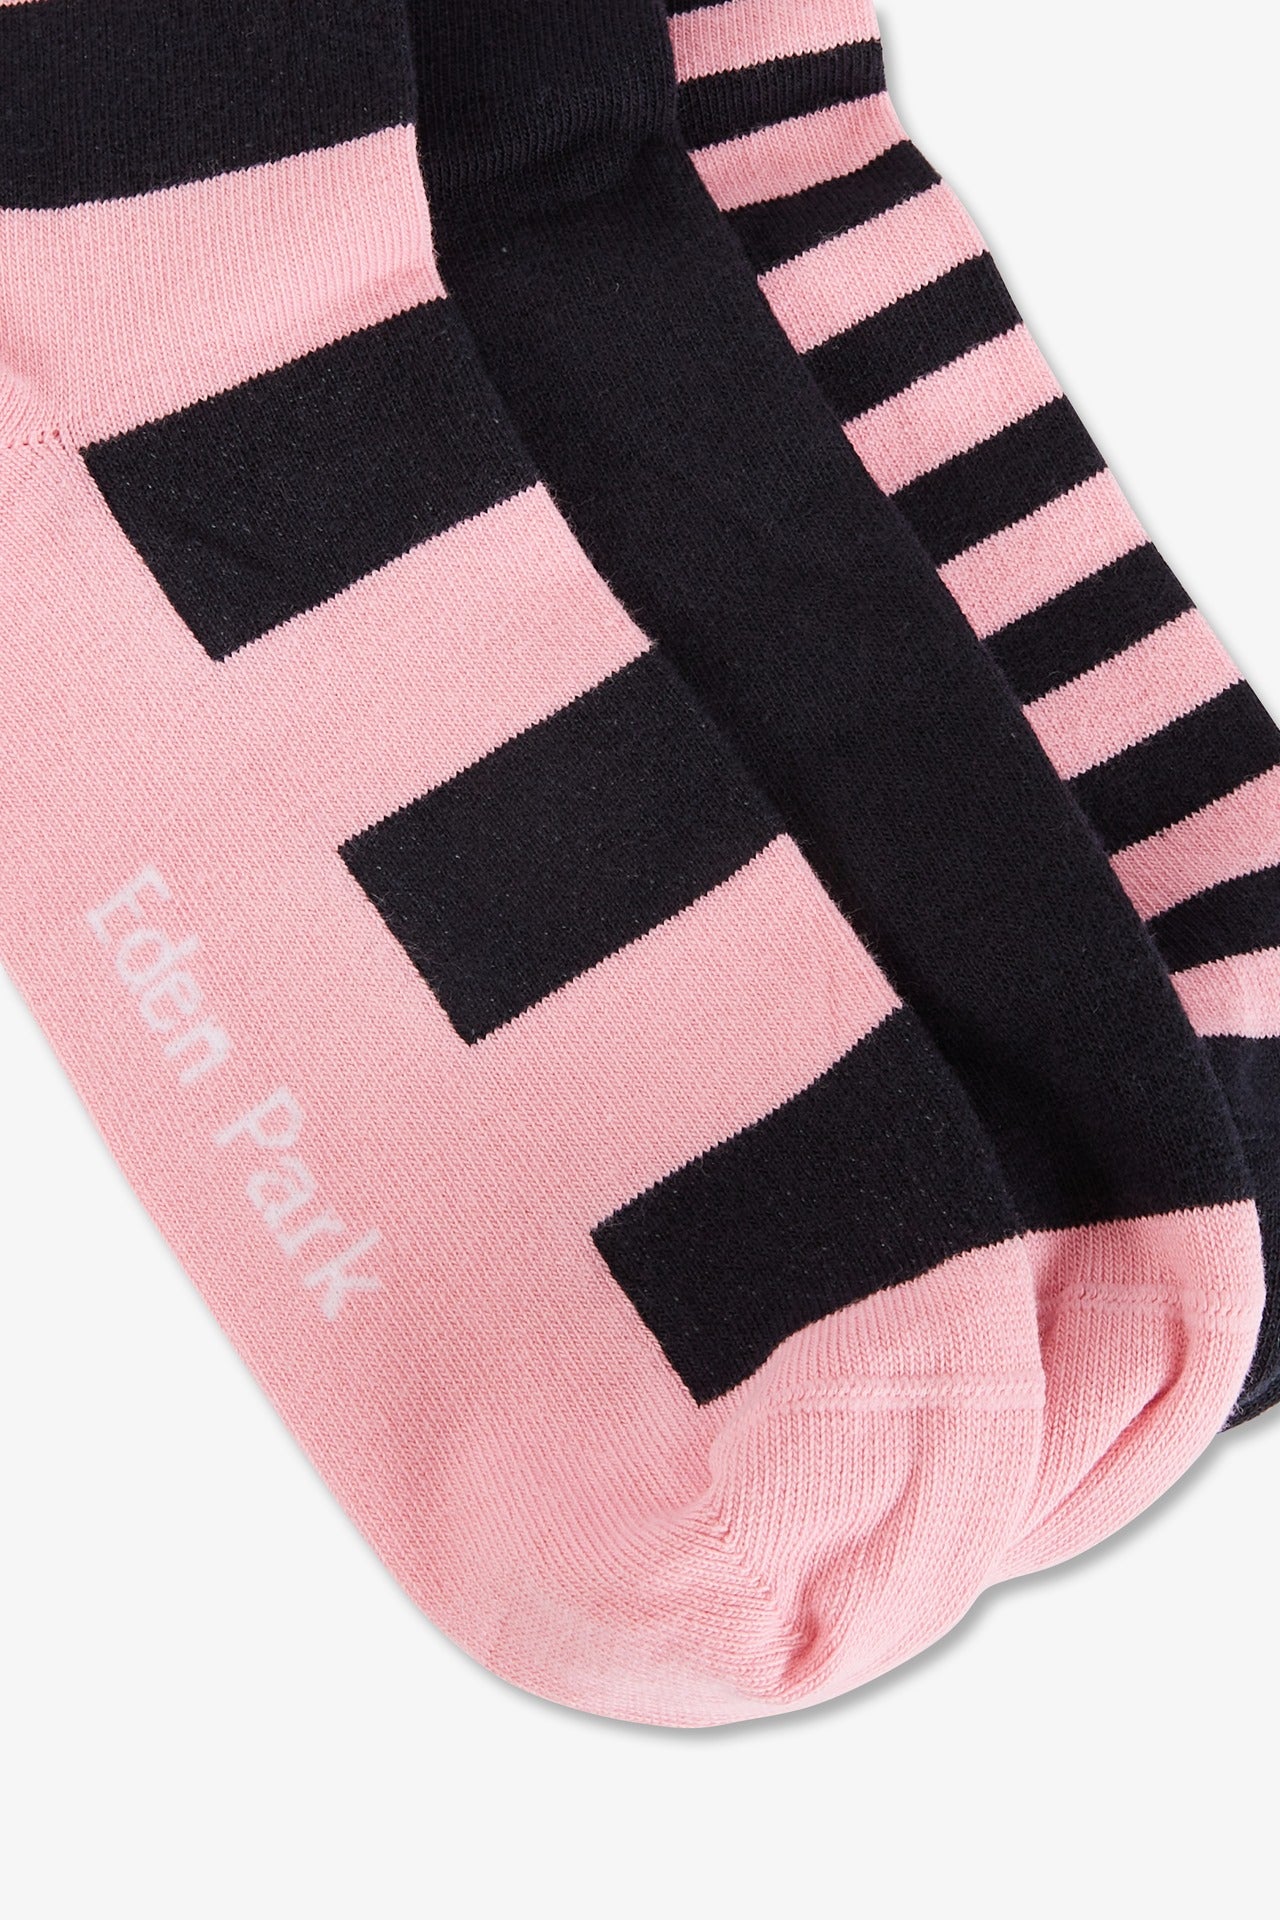 Lot de 3 paires de chaussettes cerclées rose en coton stretch - Image 3